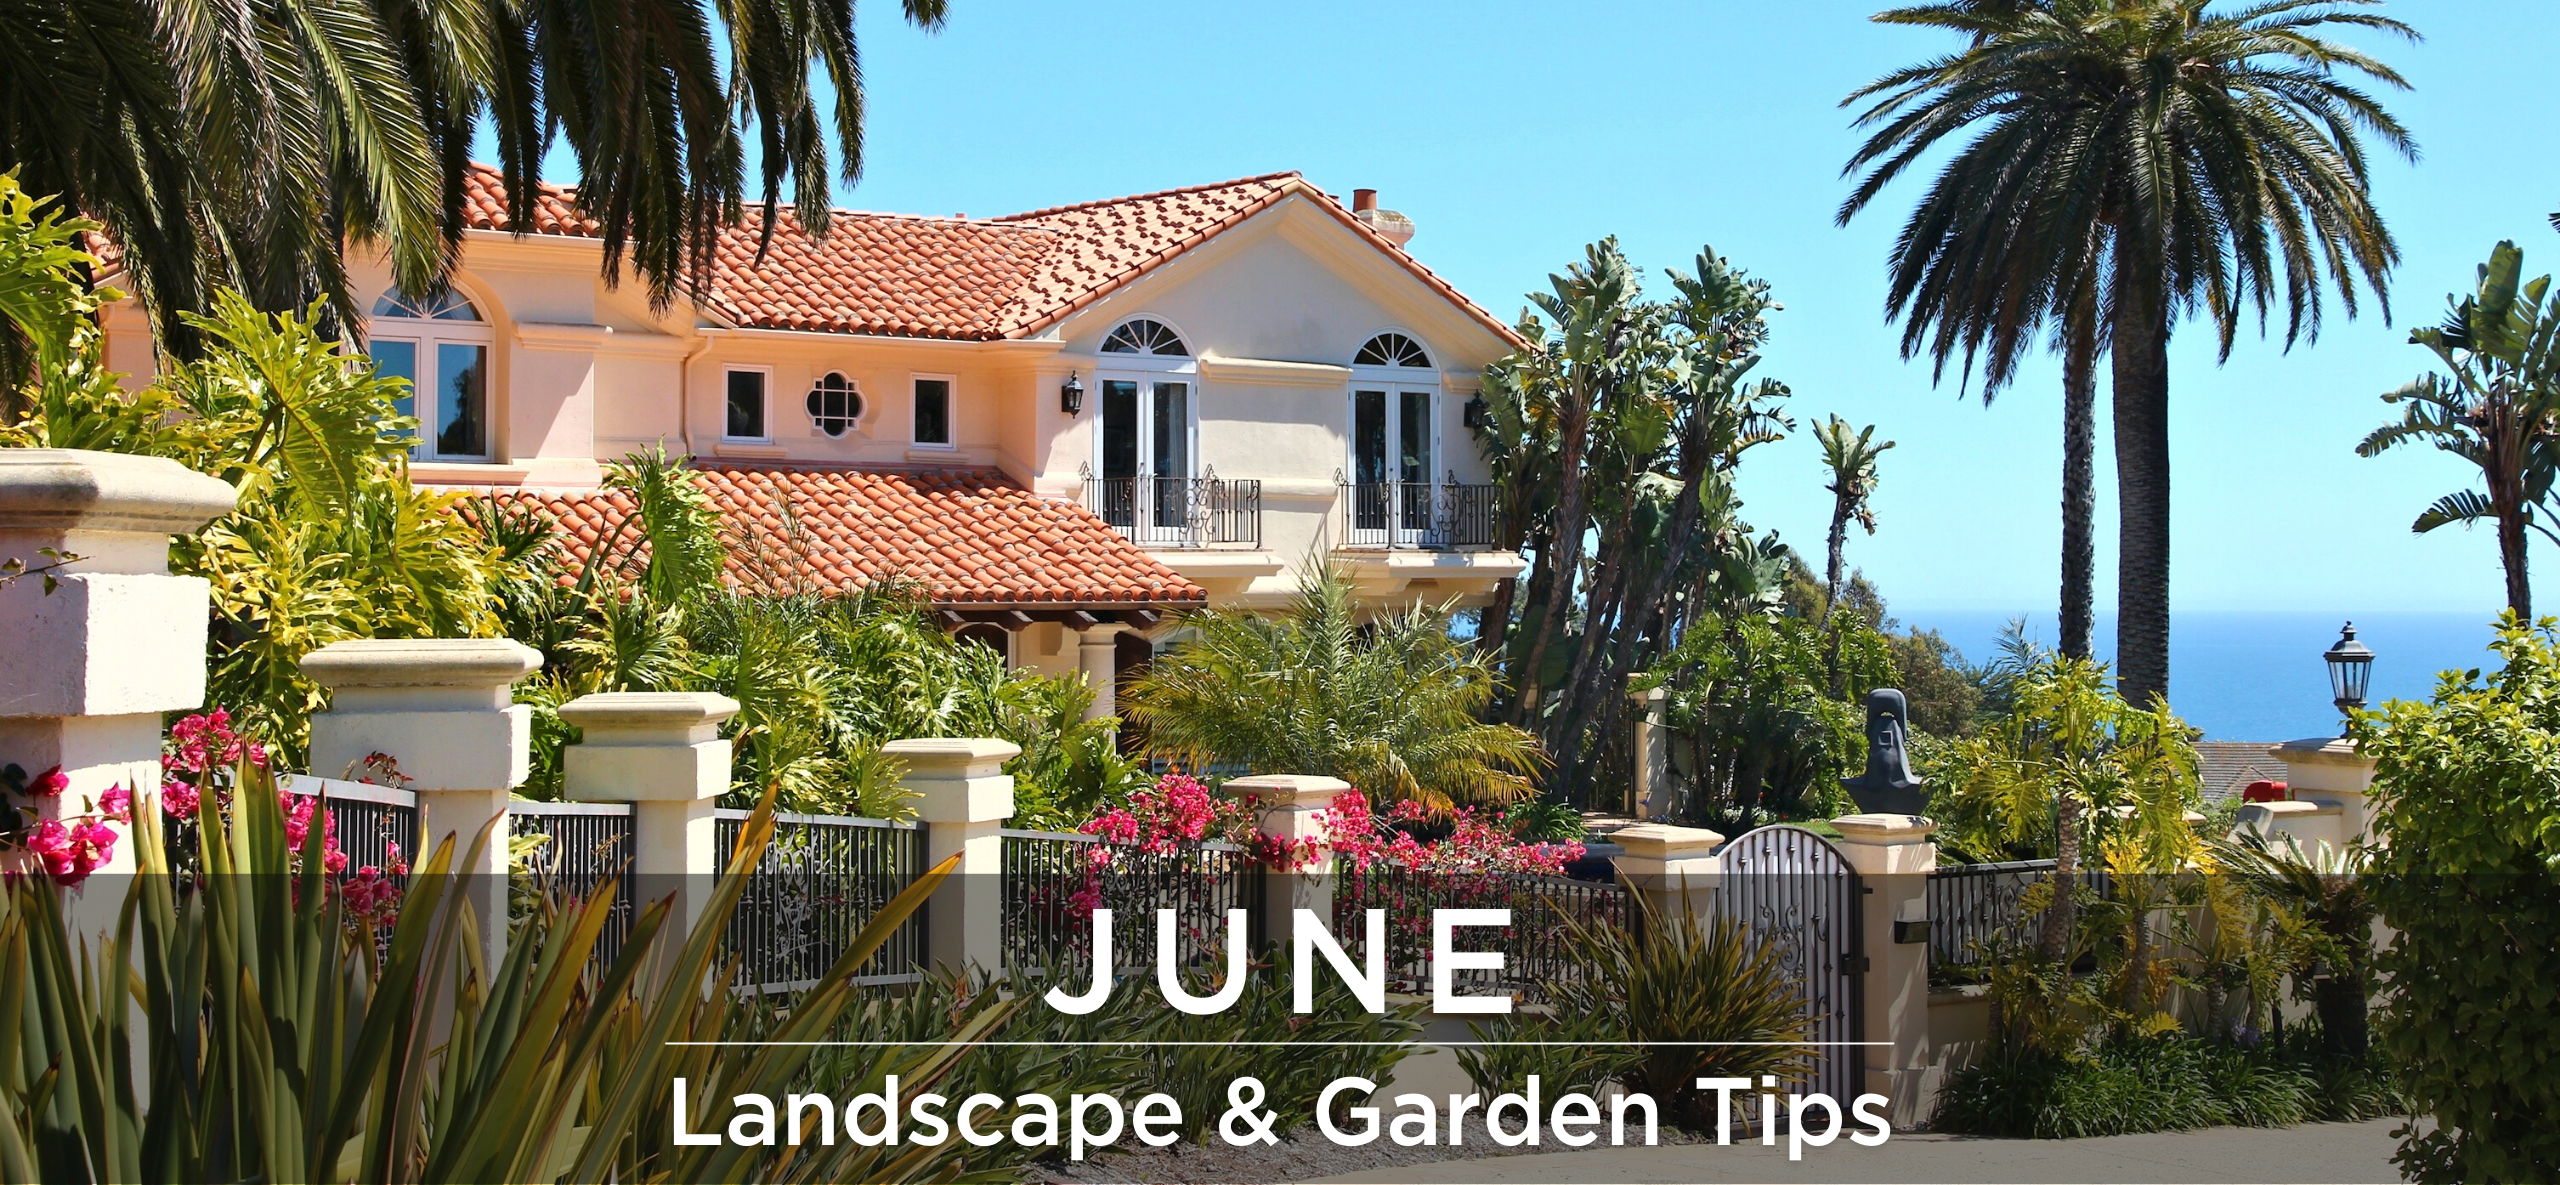 June landscape and garden tips header